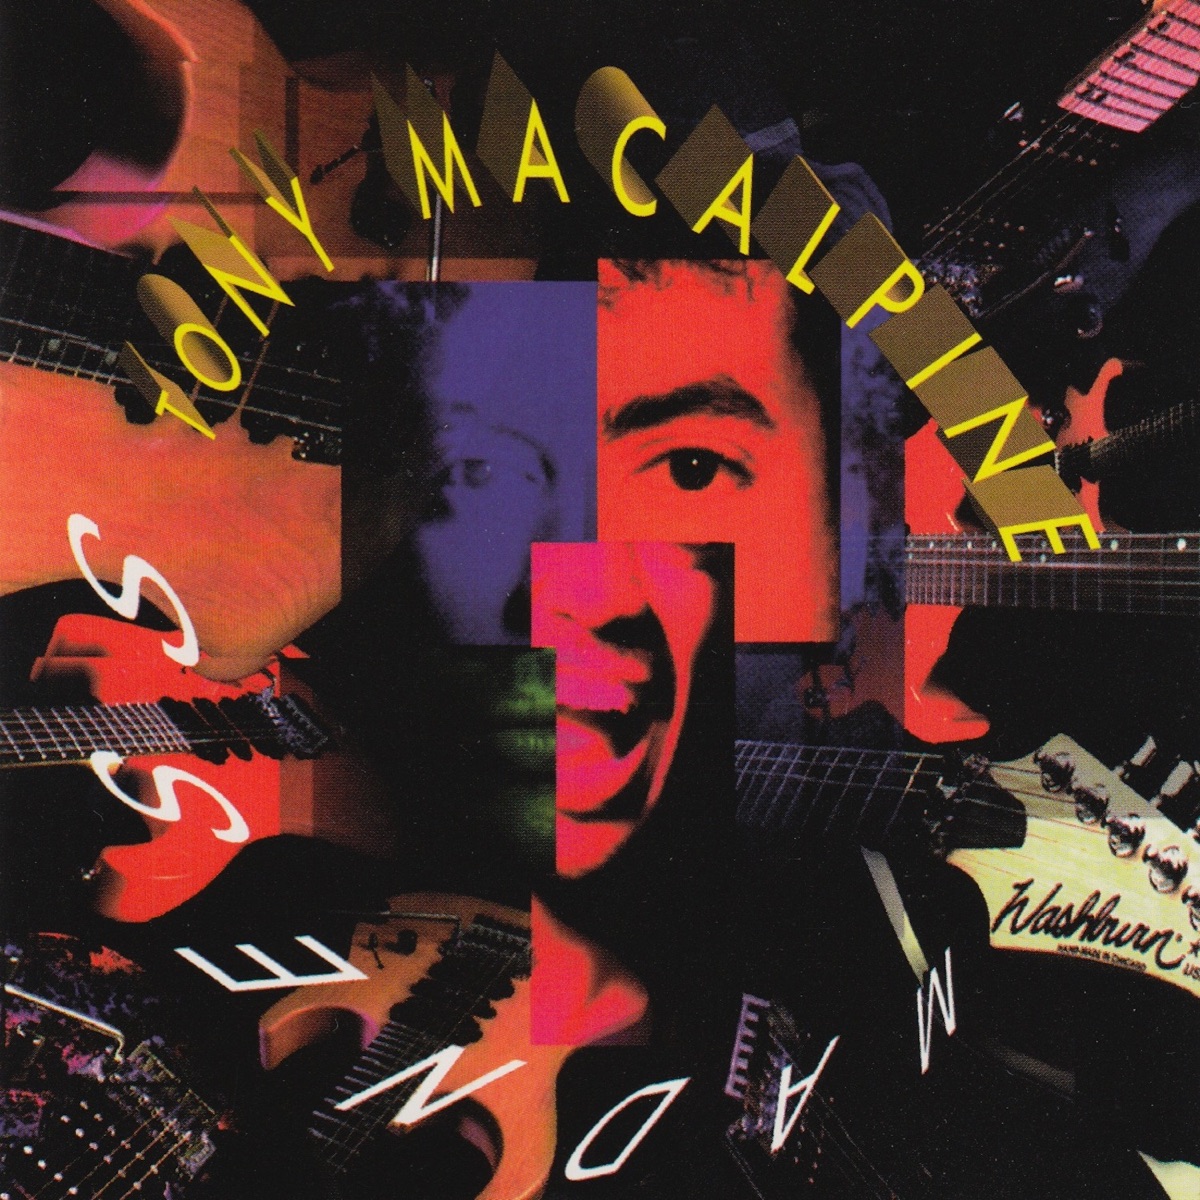 Maximum Security - Album by Tony MacAlpine - Apple Music